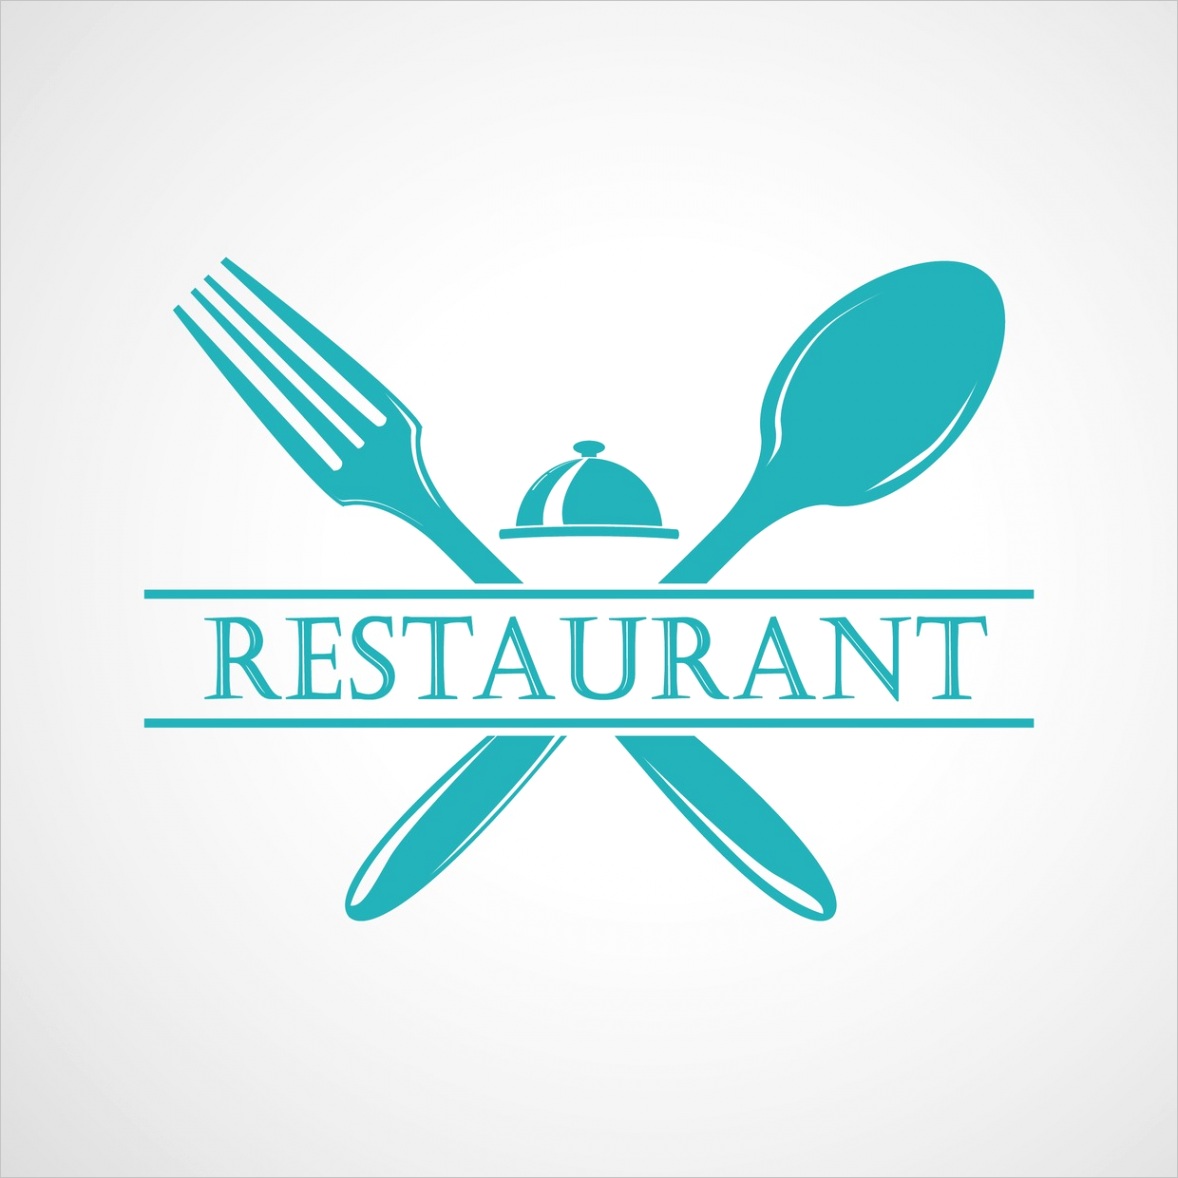 restaurant business plan template